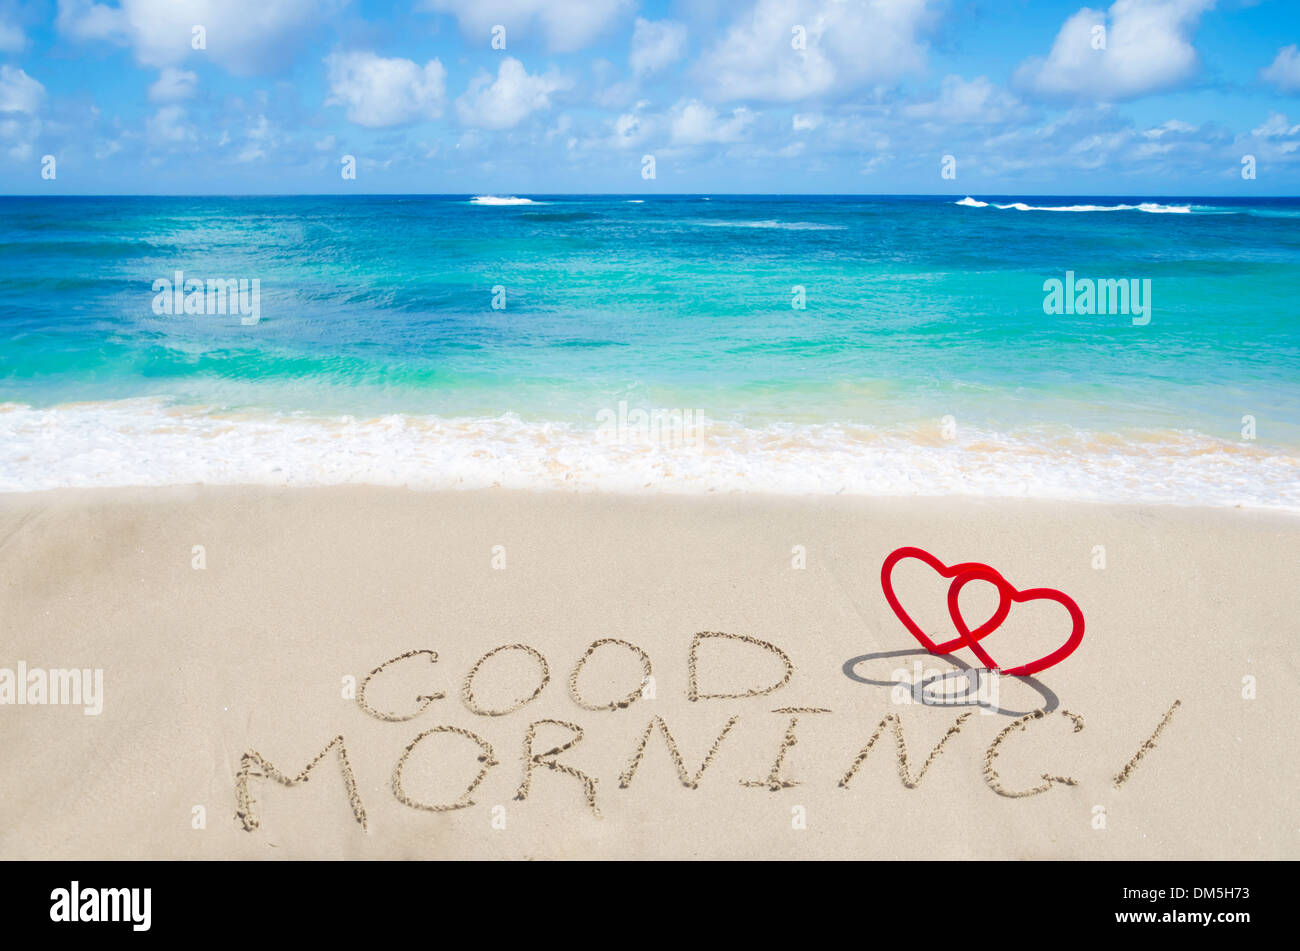 Segno 'Good morning' con due cuori sulla spiaggia sabbiosa dall'oceano Foto Stock